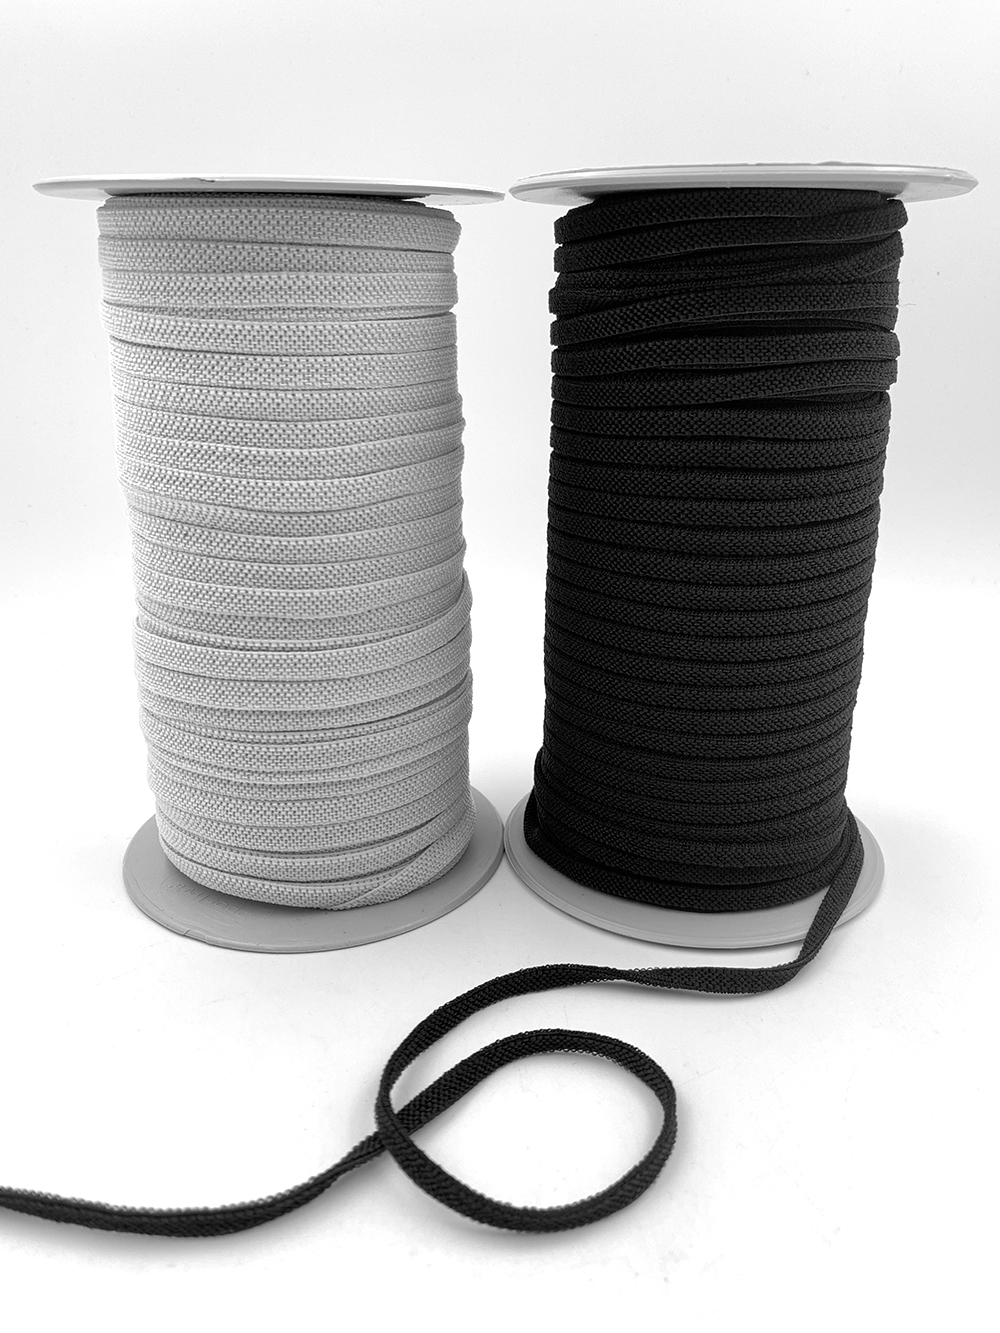 Flat Elastic Ribbon - 1/4 Online Ribbon - May Arts Ribbon